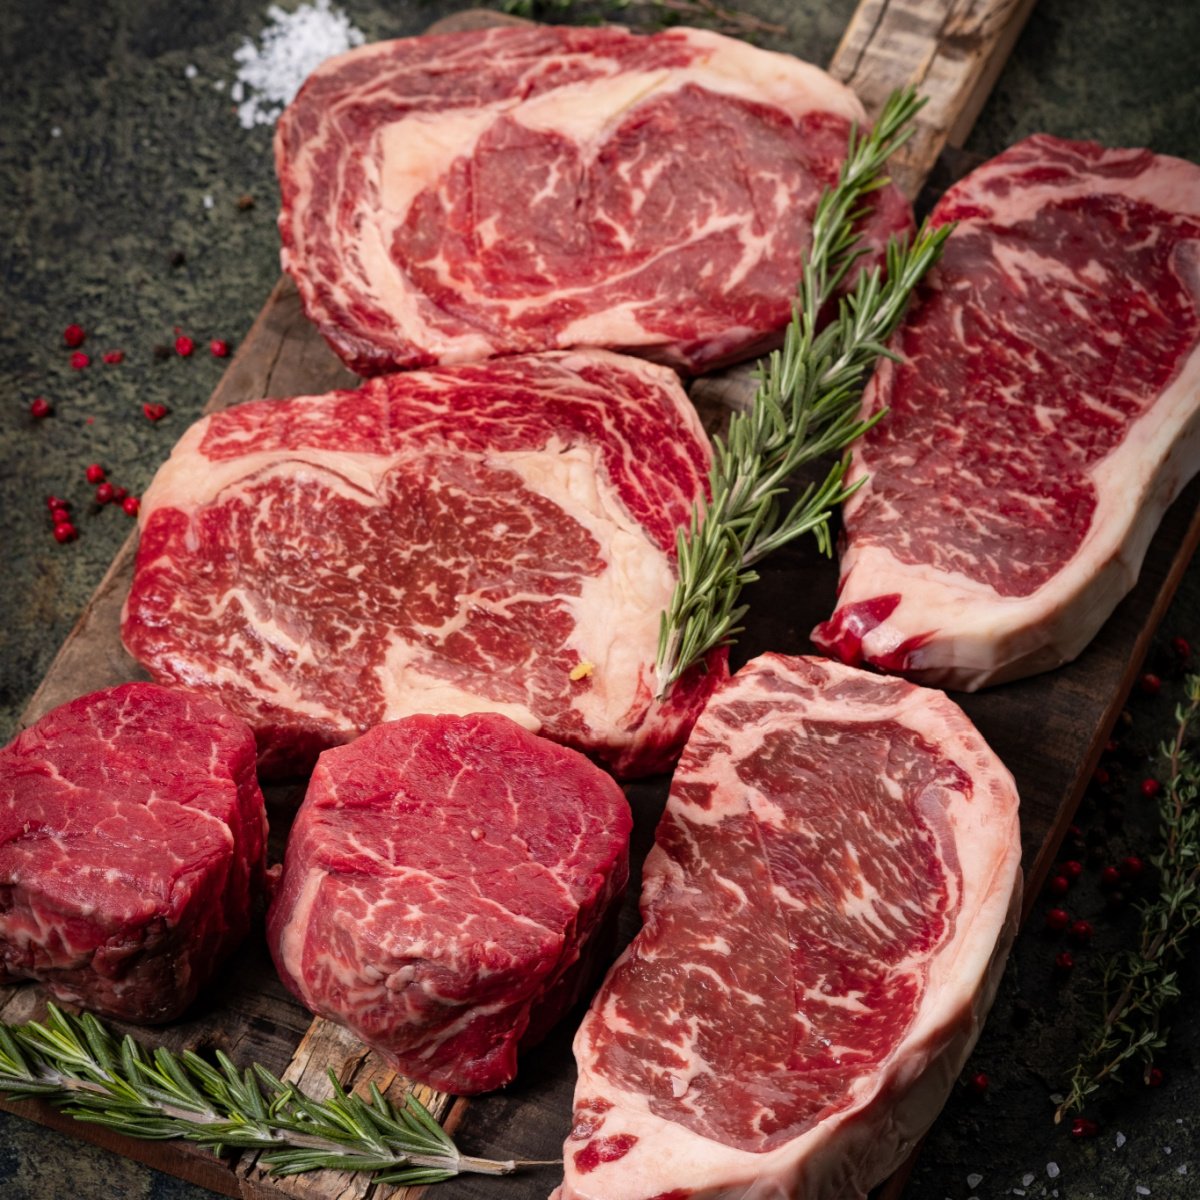 raw cuts of beef steak